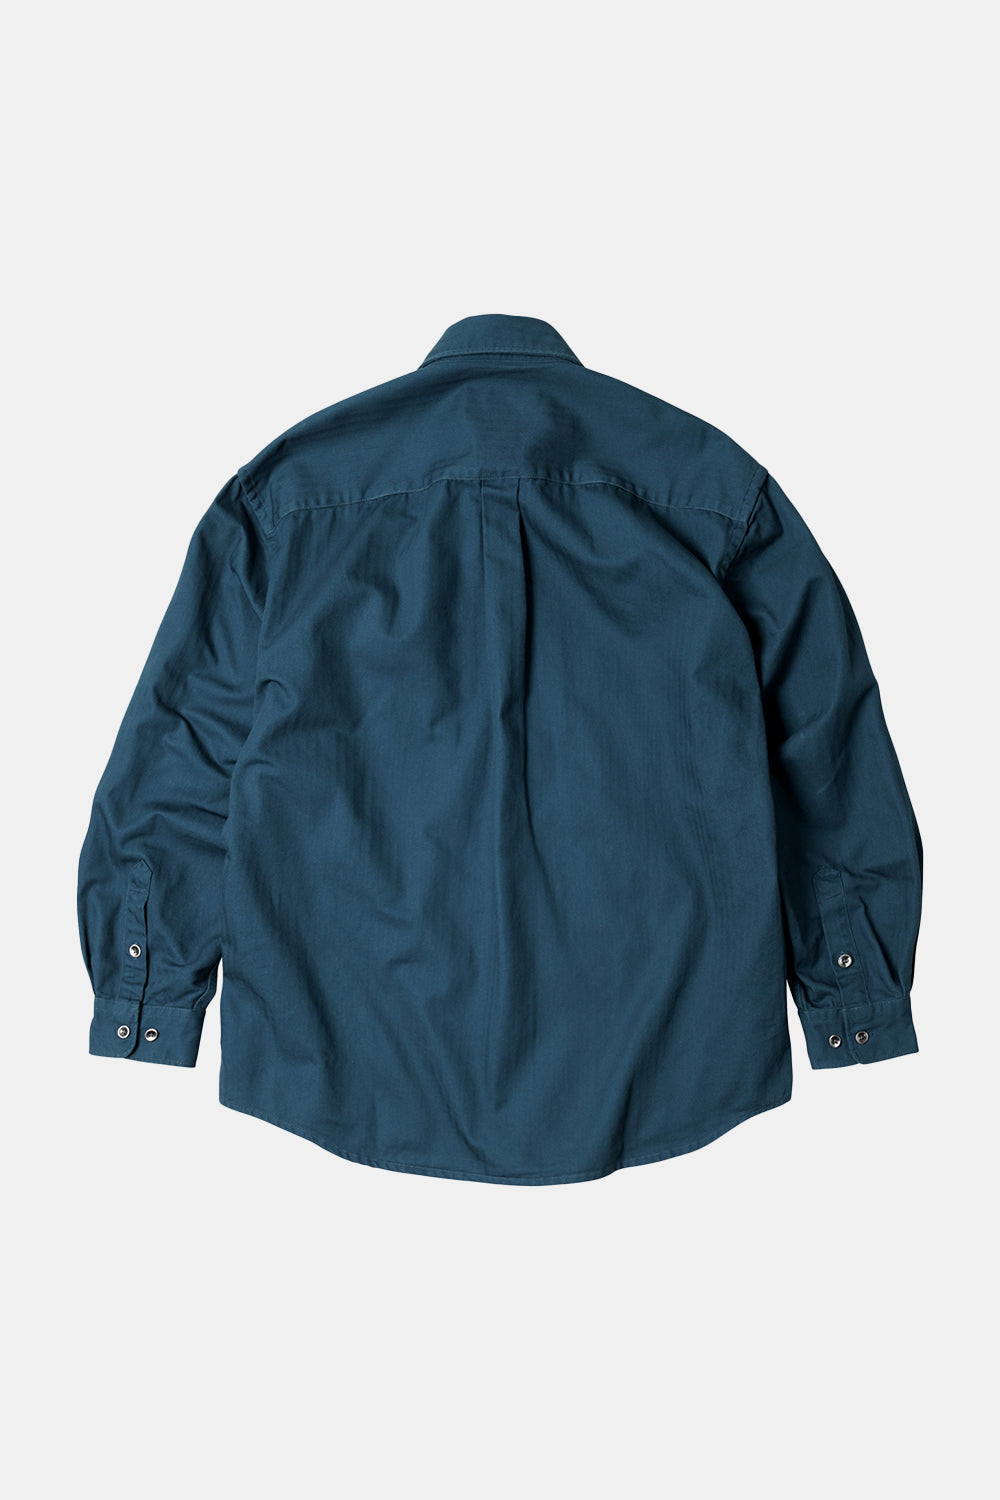 Frizmworks HBT Zimmermann Tasche Arbeit Shirt Jacke (Vintage Blau)